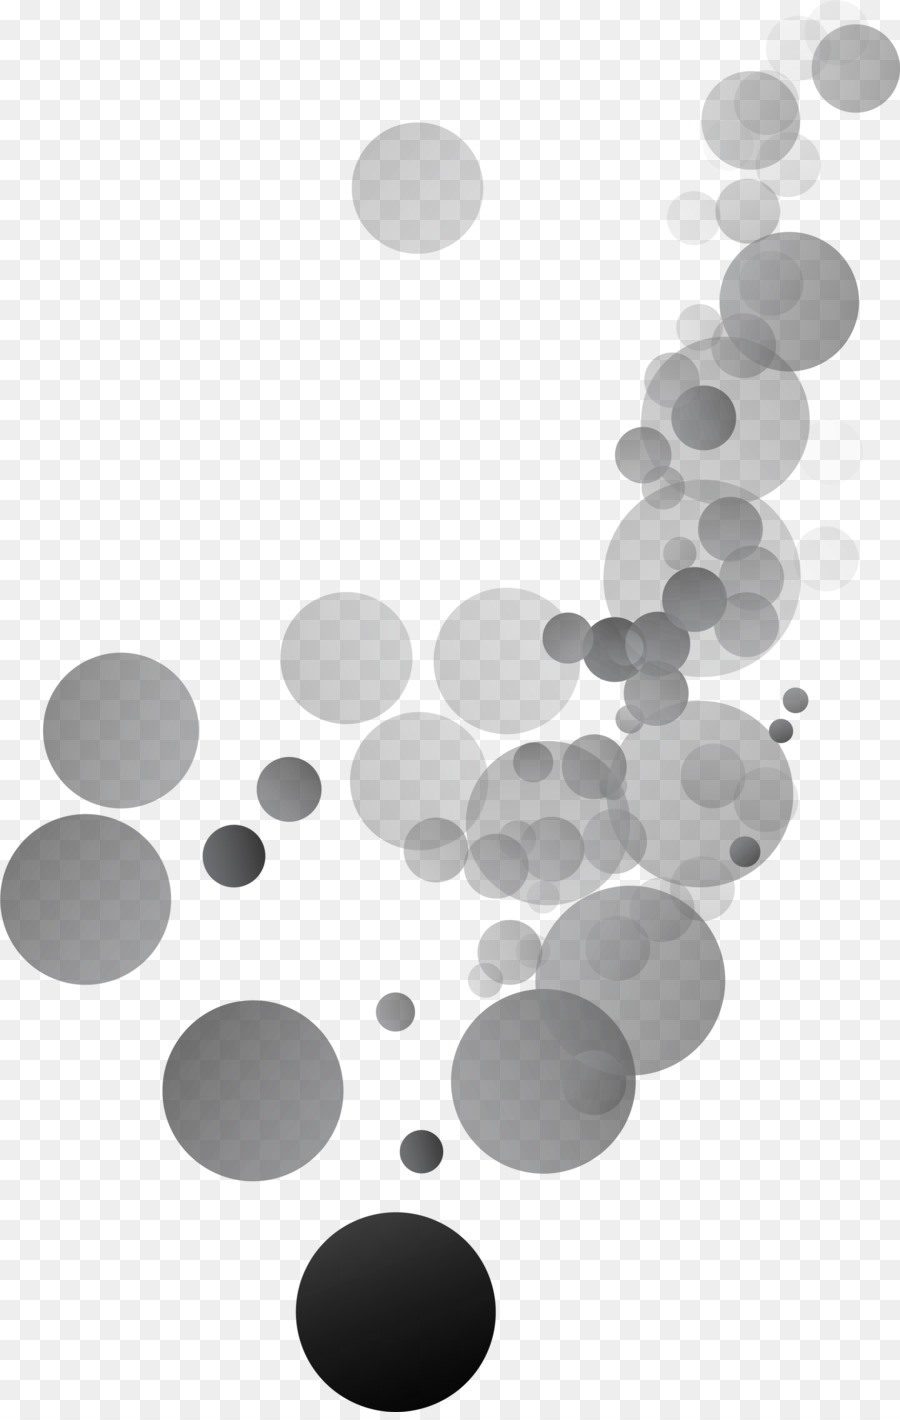 Grau, Schwarz und weiß Download - Grau beauftragte Kreis